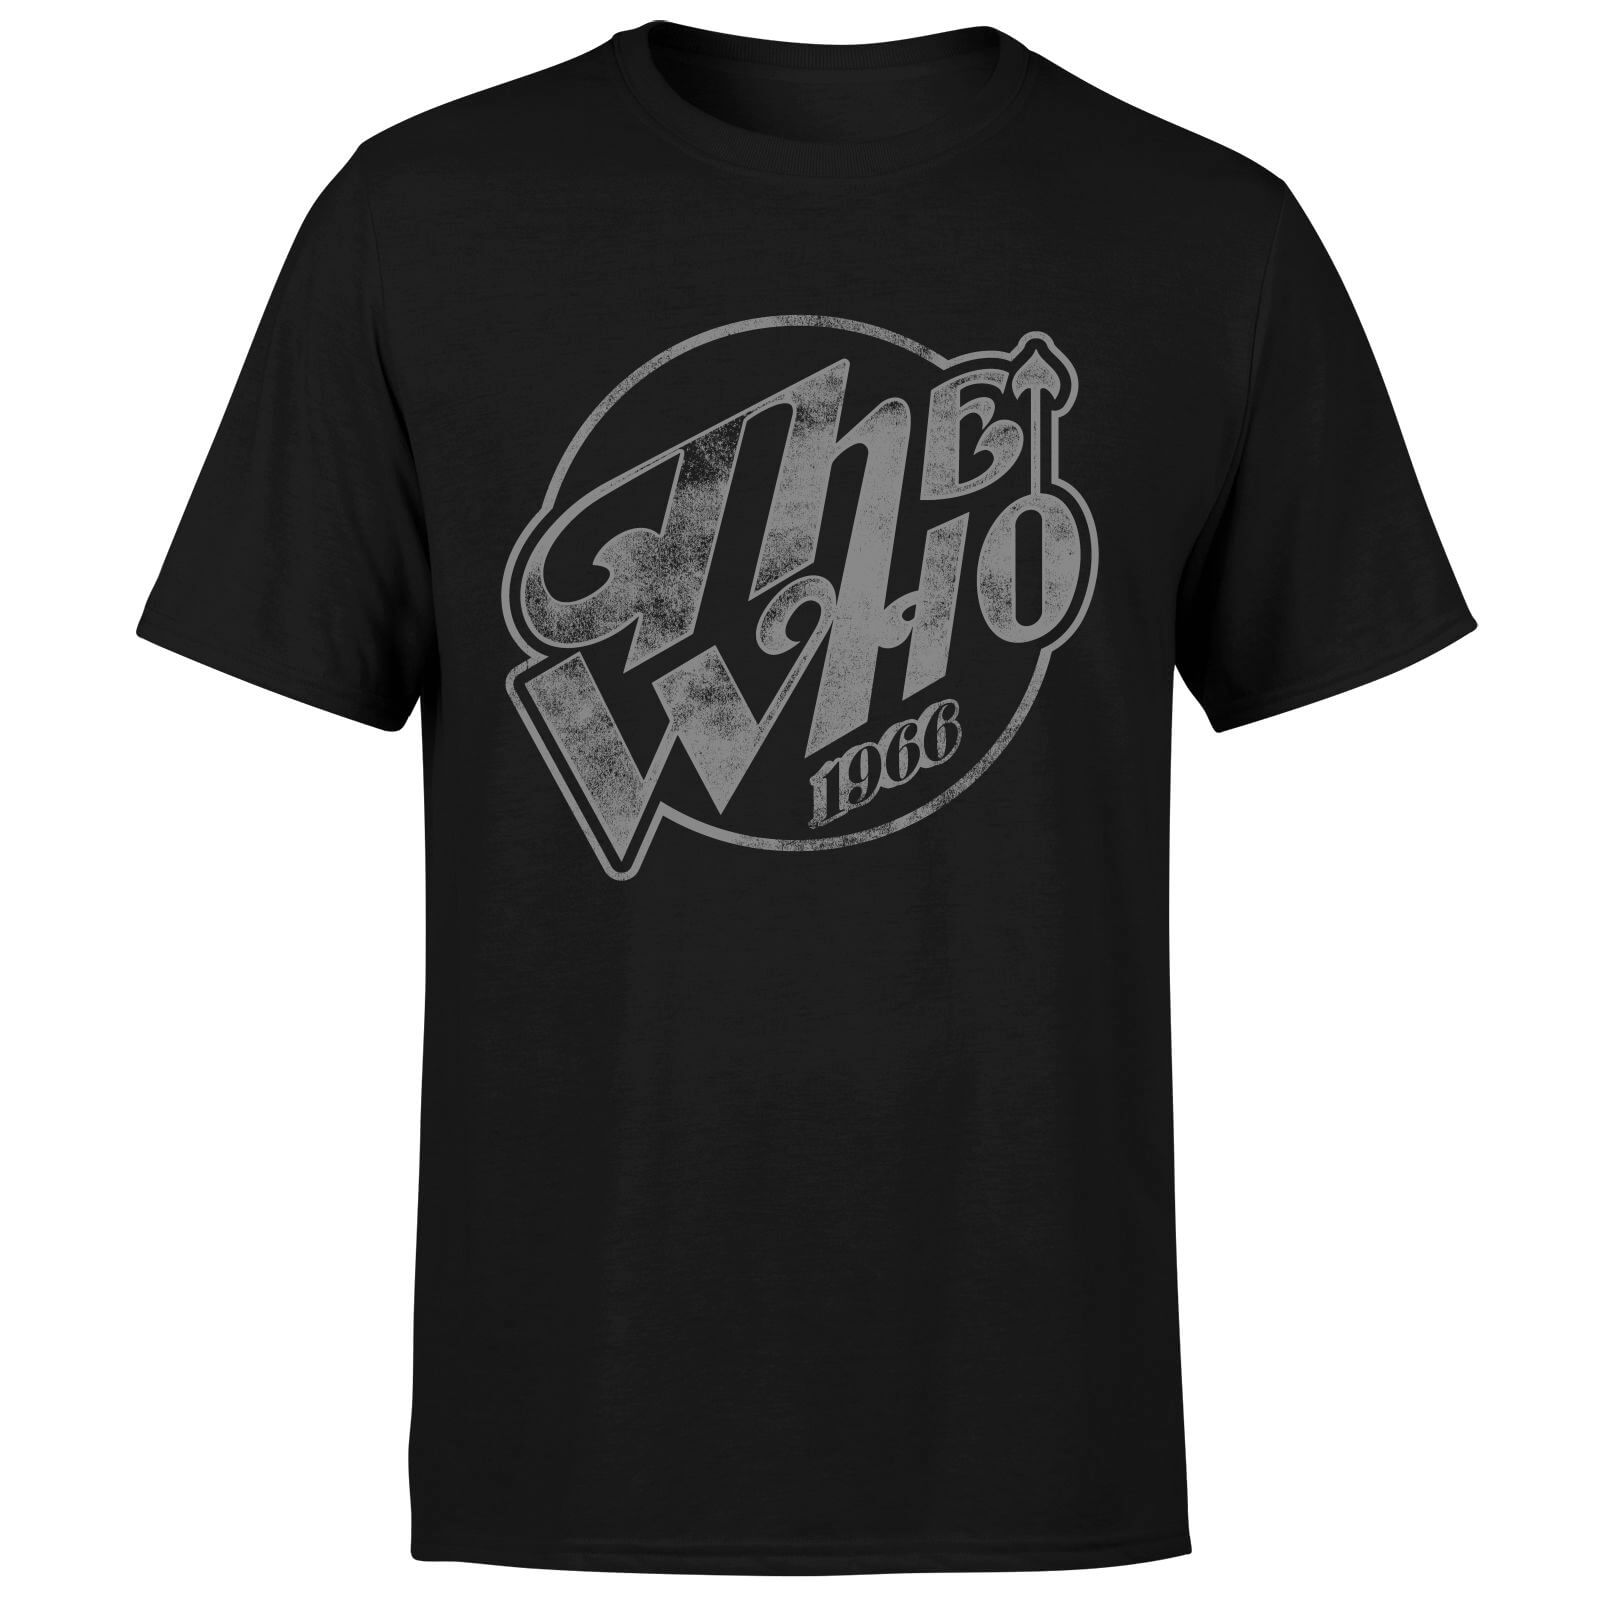 The Who 1966 Men's T-Shirt - Black - 4XL